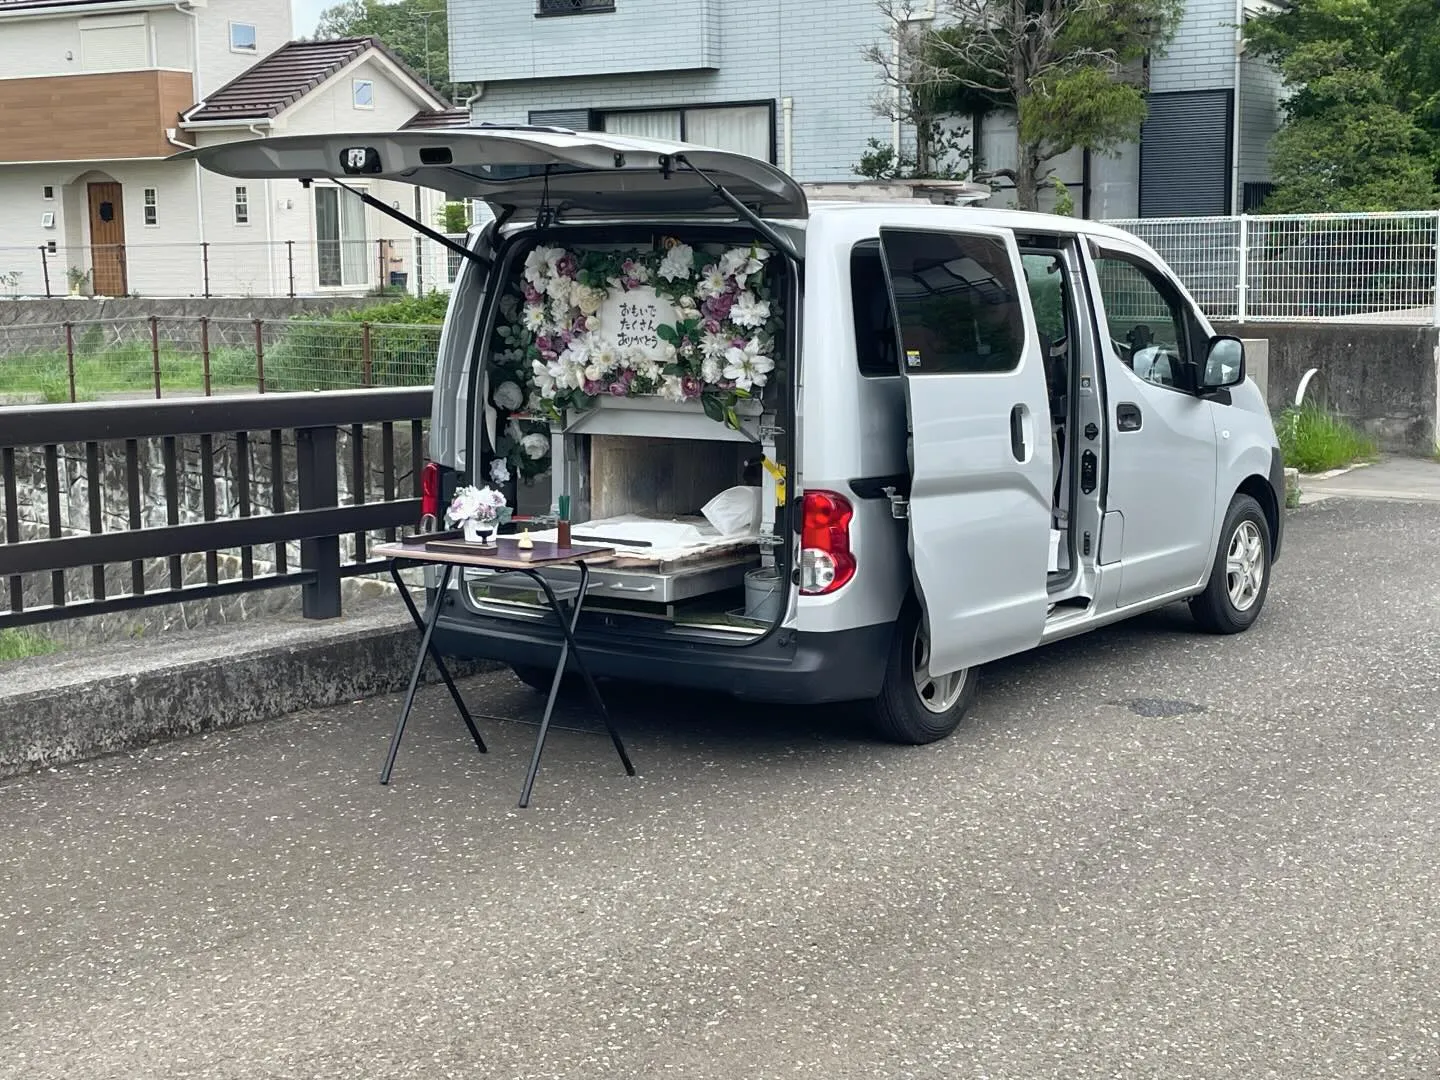 東京都武蔵村山市にてチンチラちゃんのご火葬に伺いました。